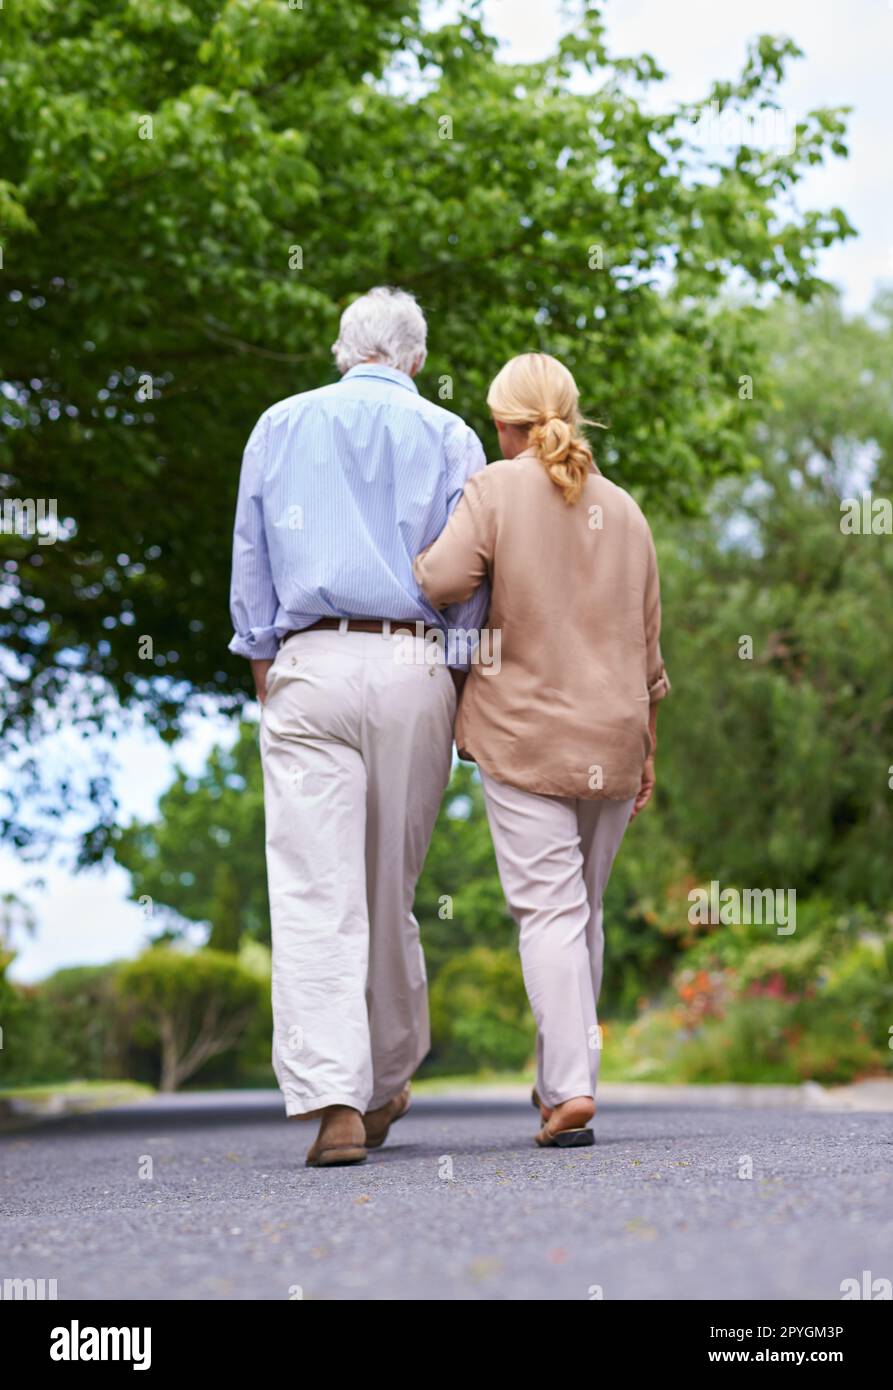 Aspetta stavano andando a casa. Ripresa di una coppia anziana che fa una passeggiata. Foto Stock